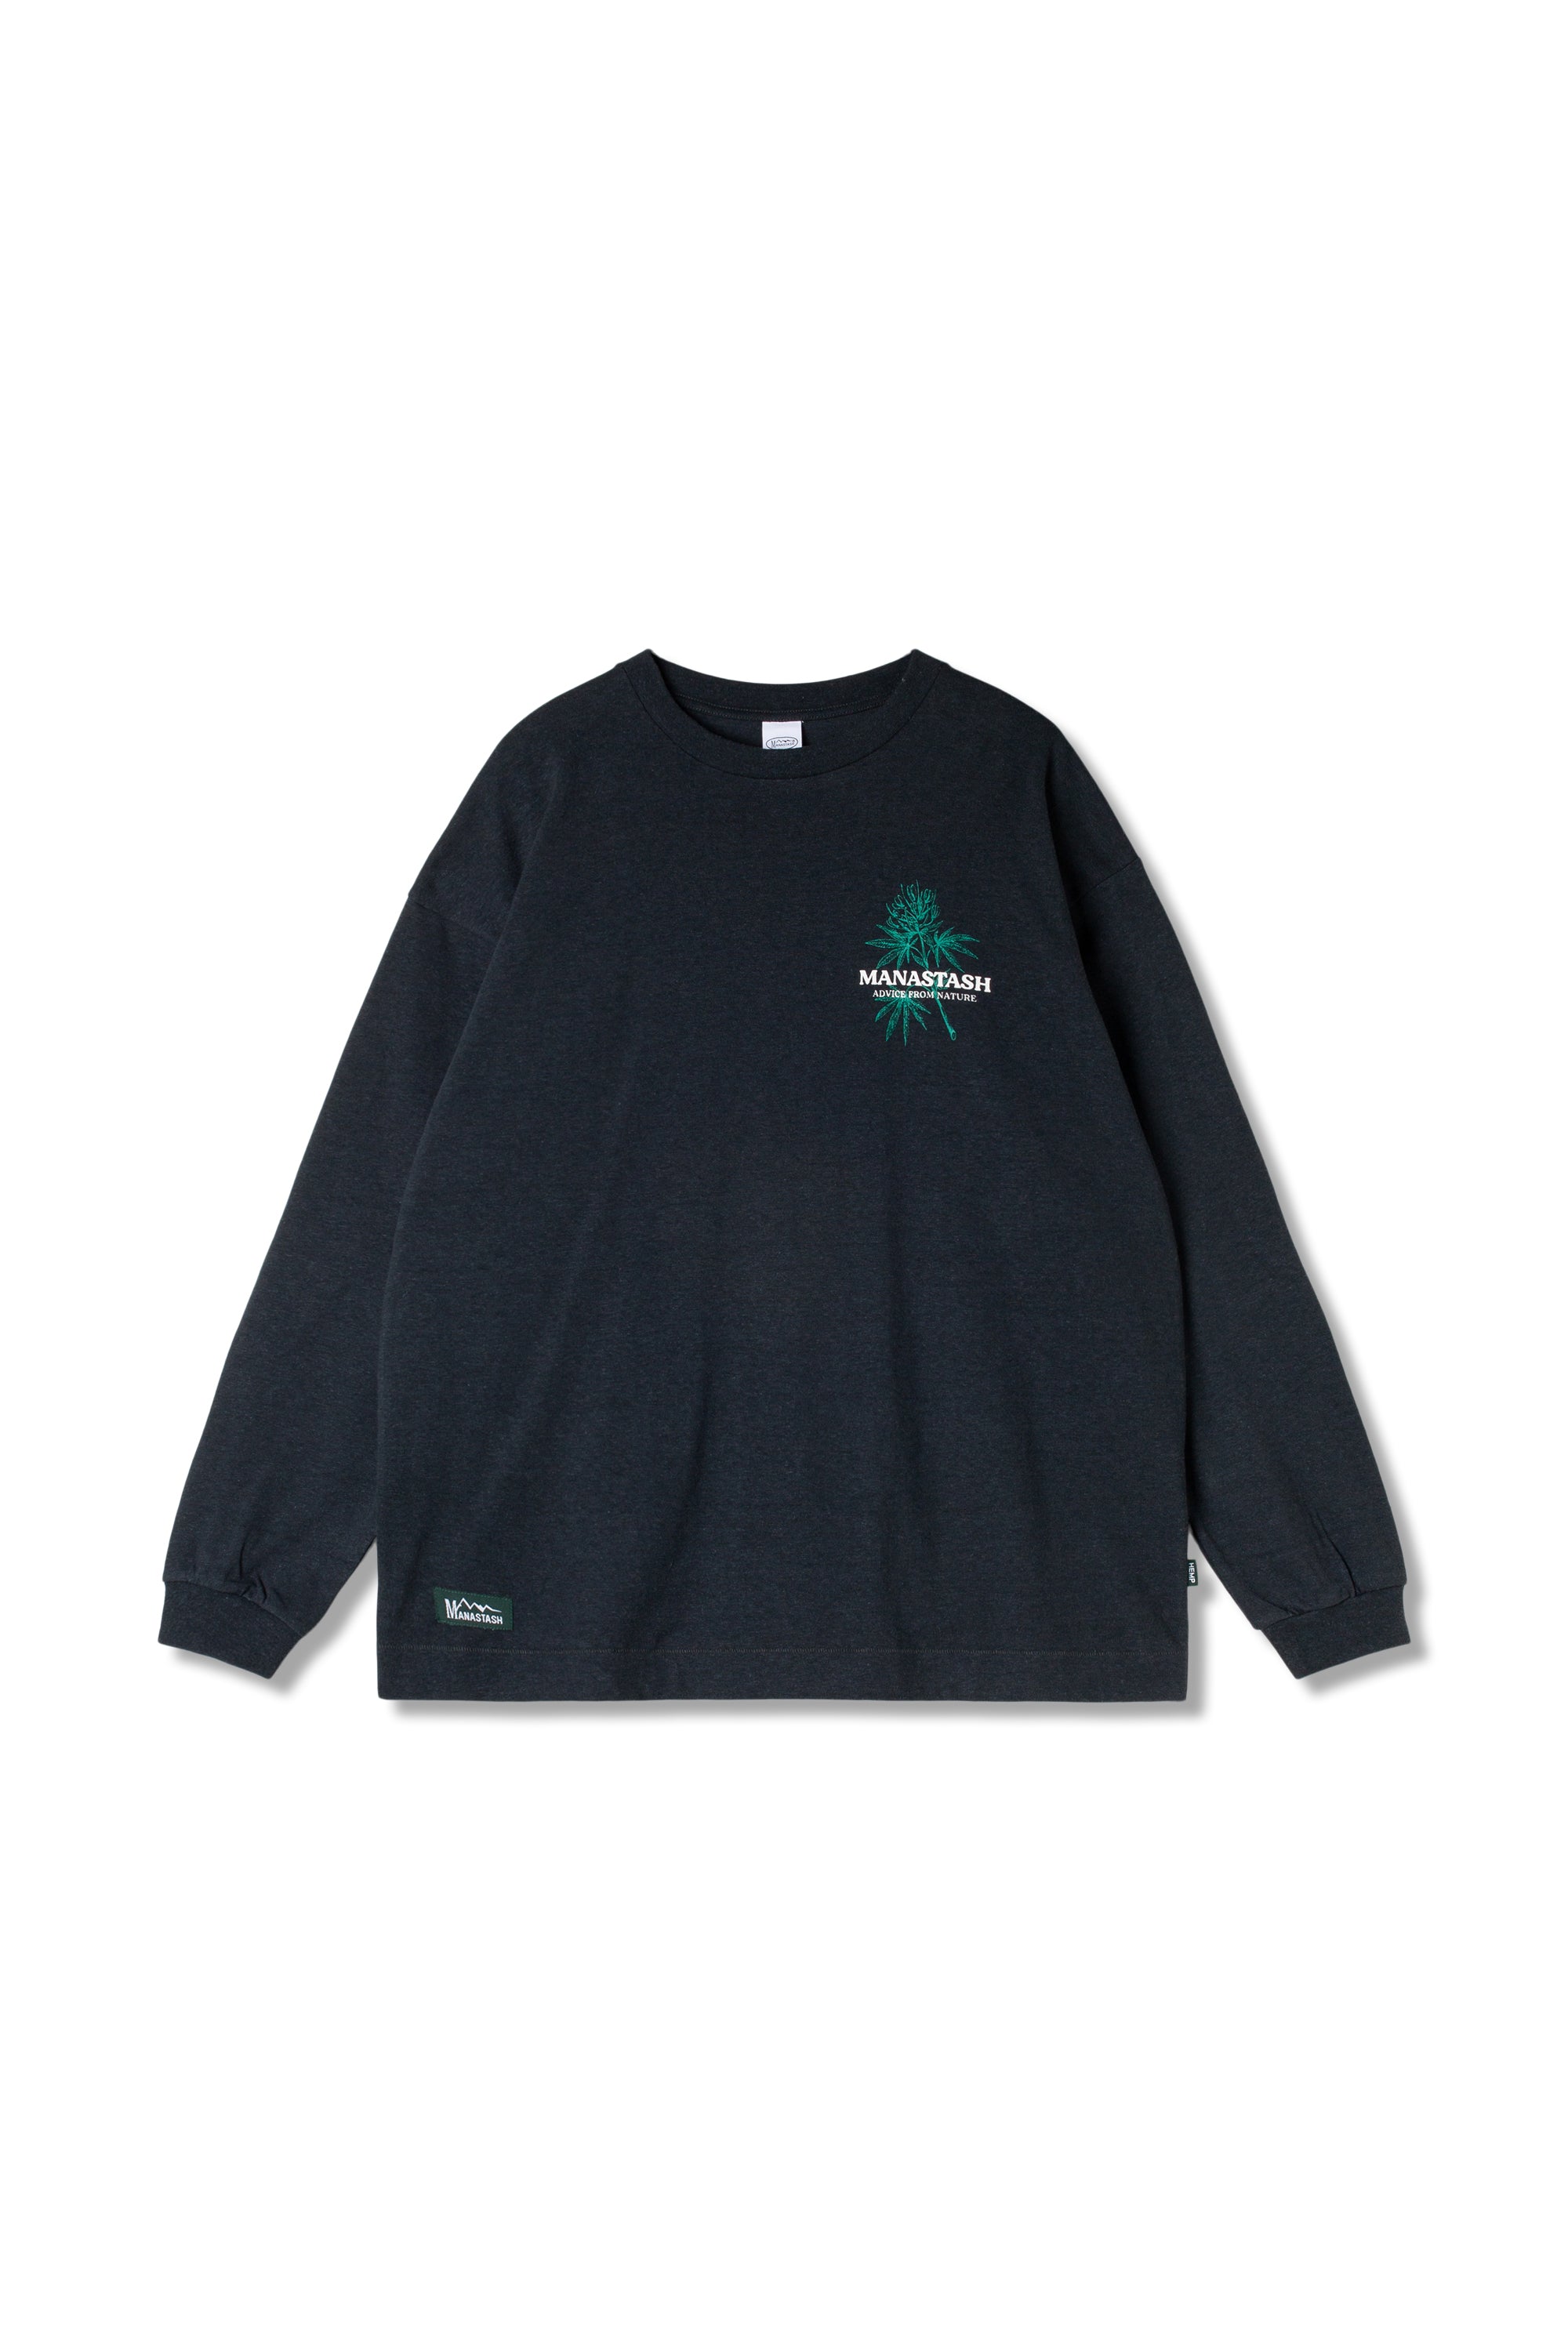 Cascade Sweatshirts Afn (Black)